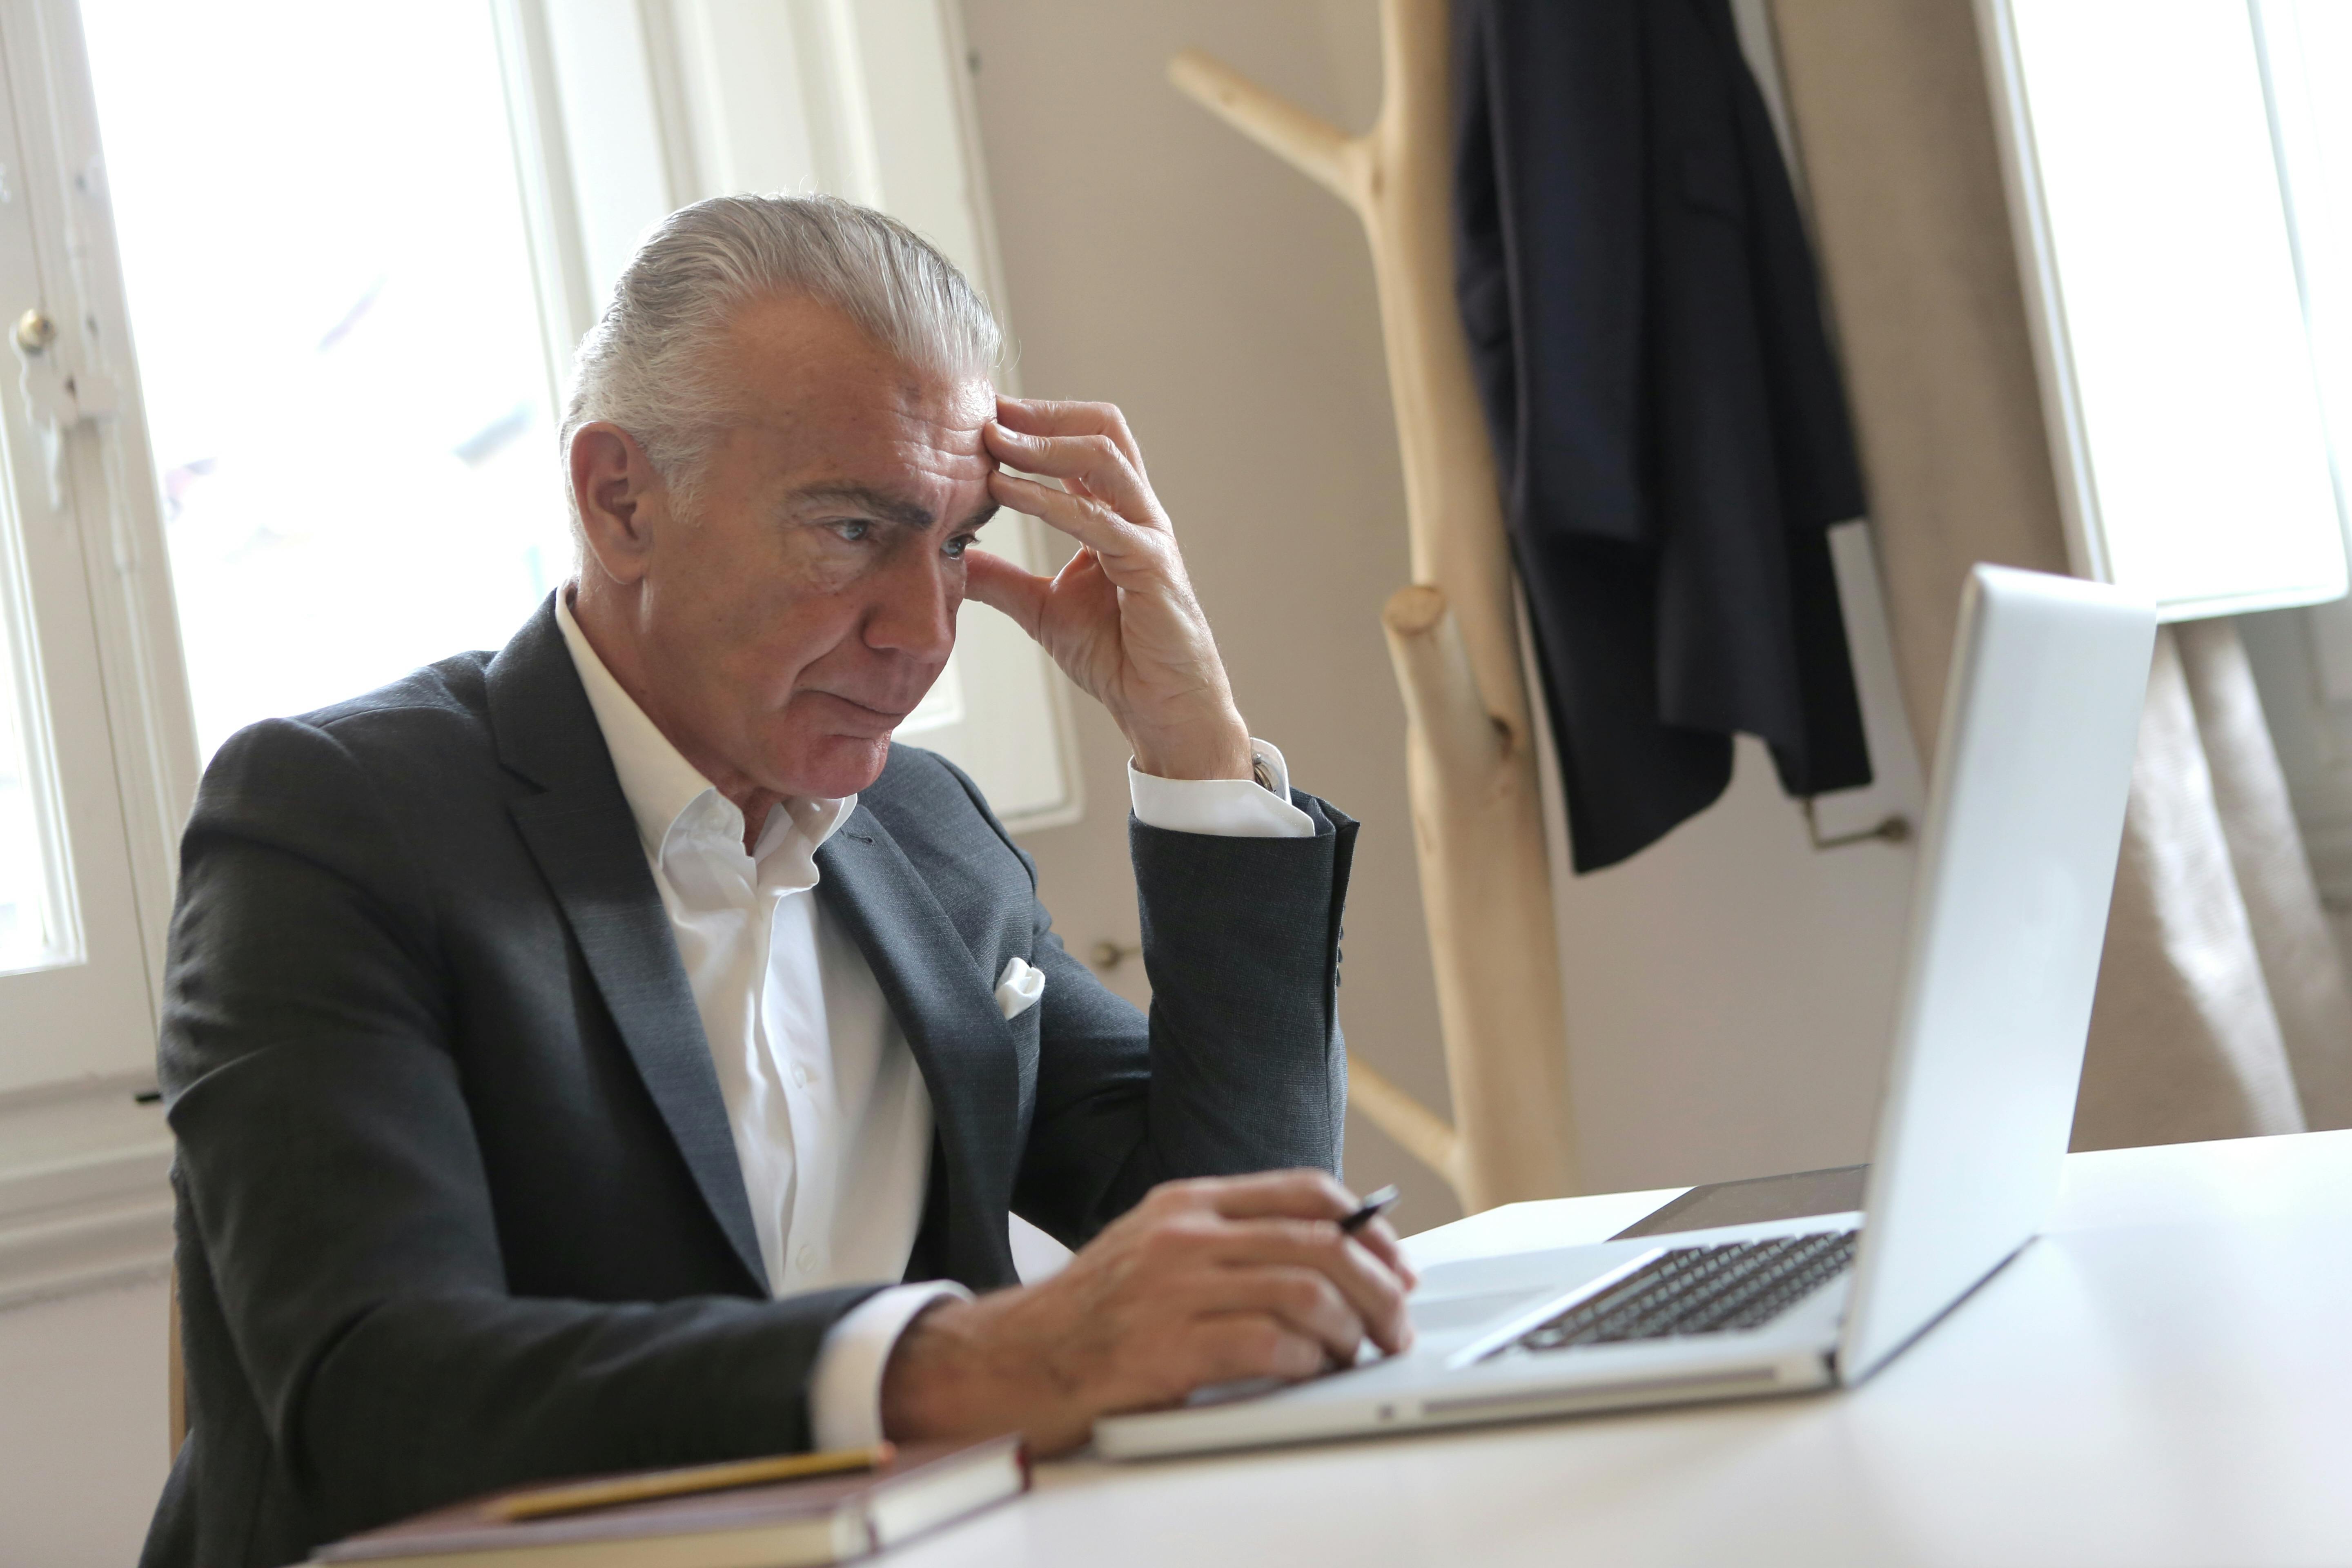 Un homme âgé stressé assis avec sa main sur sa tempe tout en tenant un stylo et en regardant son ordinateur portable | Source : Pexels